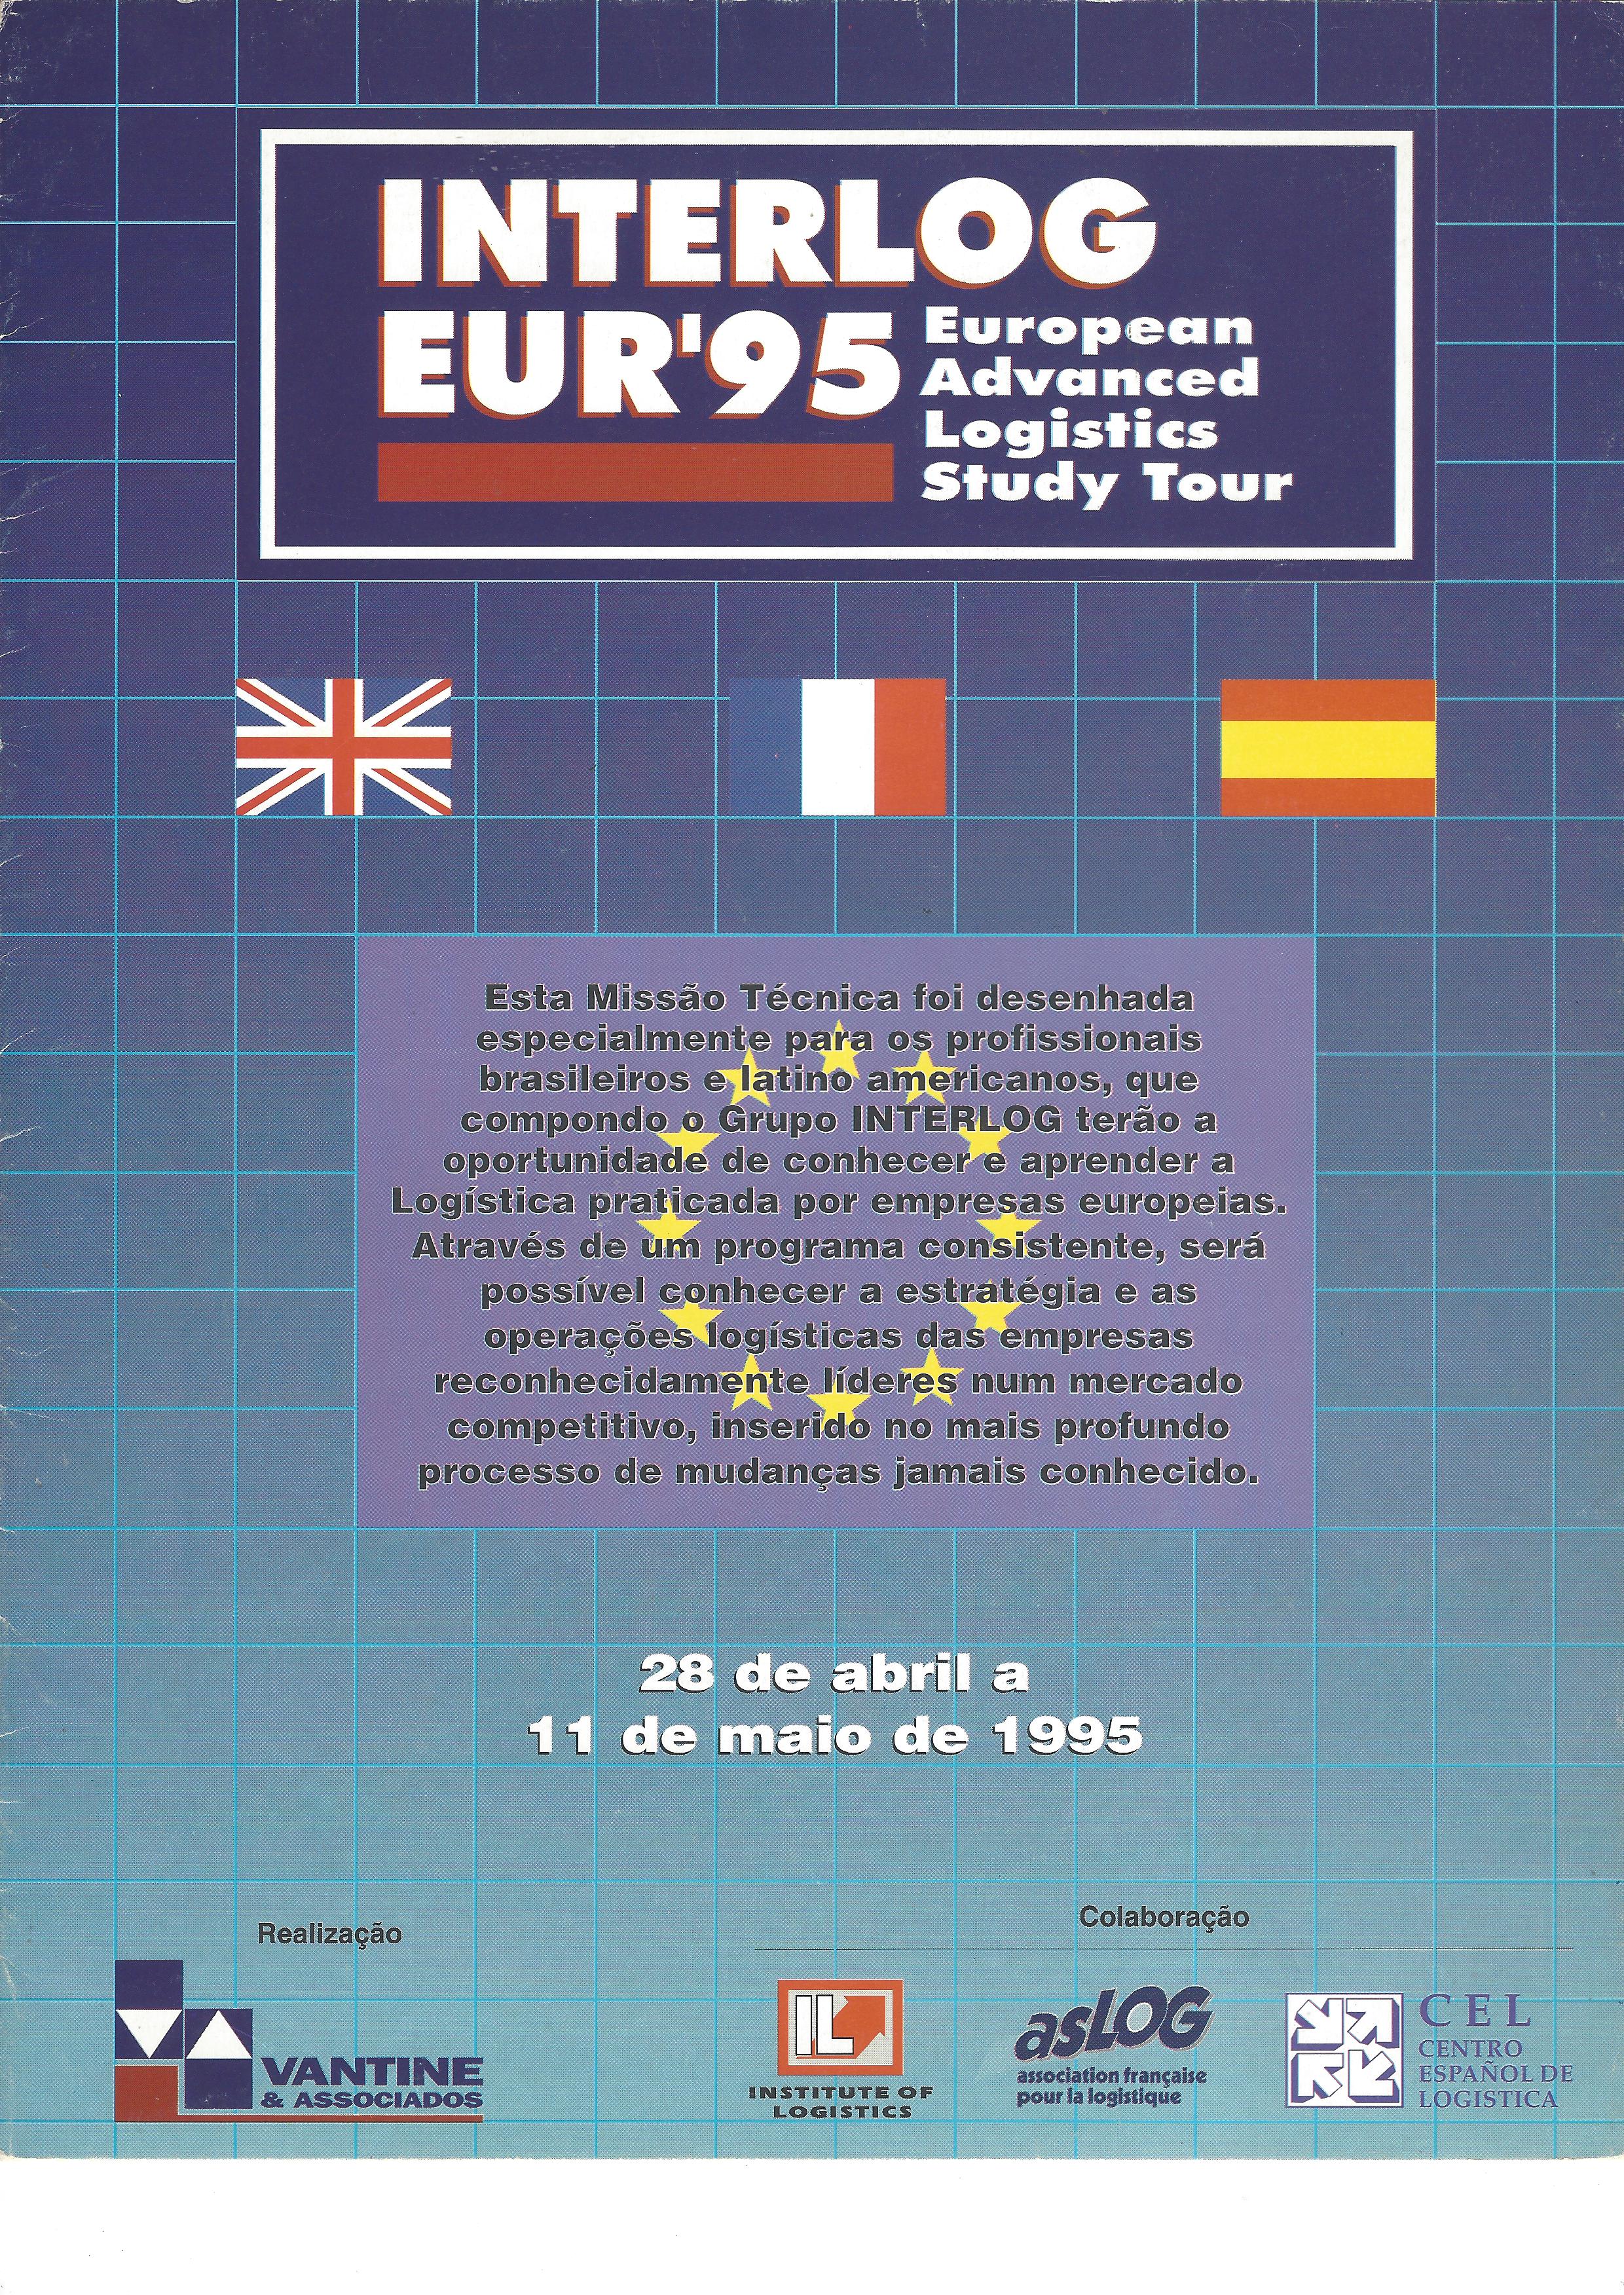 INTERLOG EUR’95 – European advanced logistics study tour